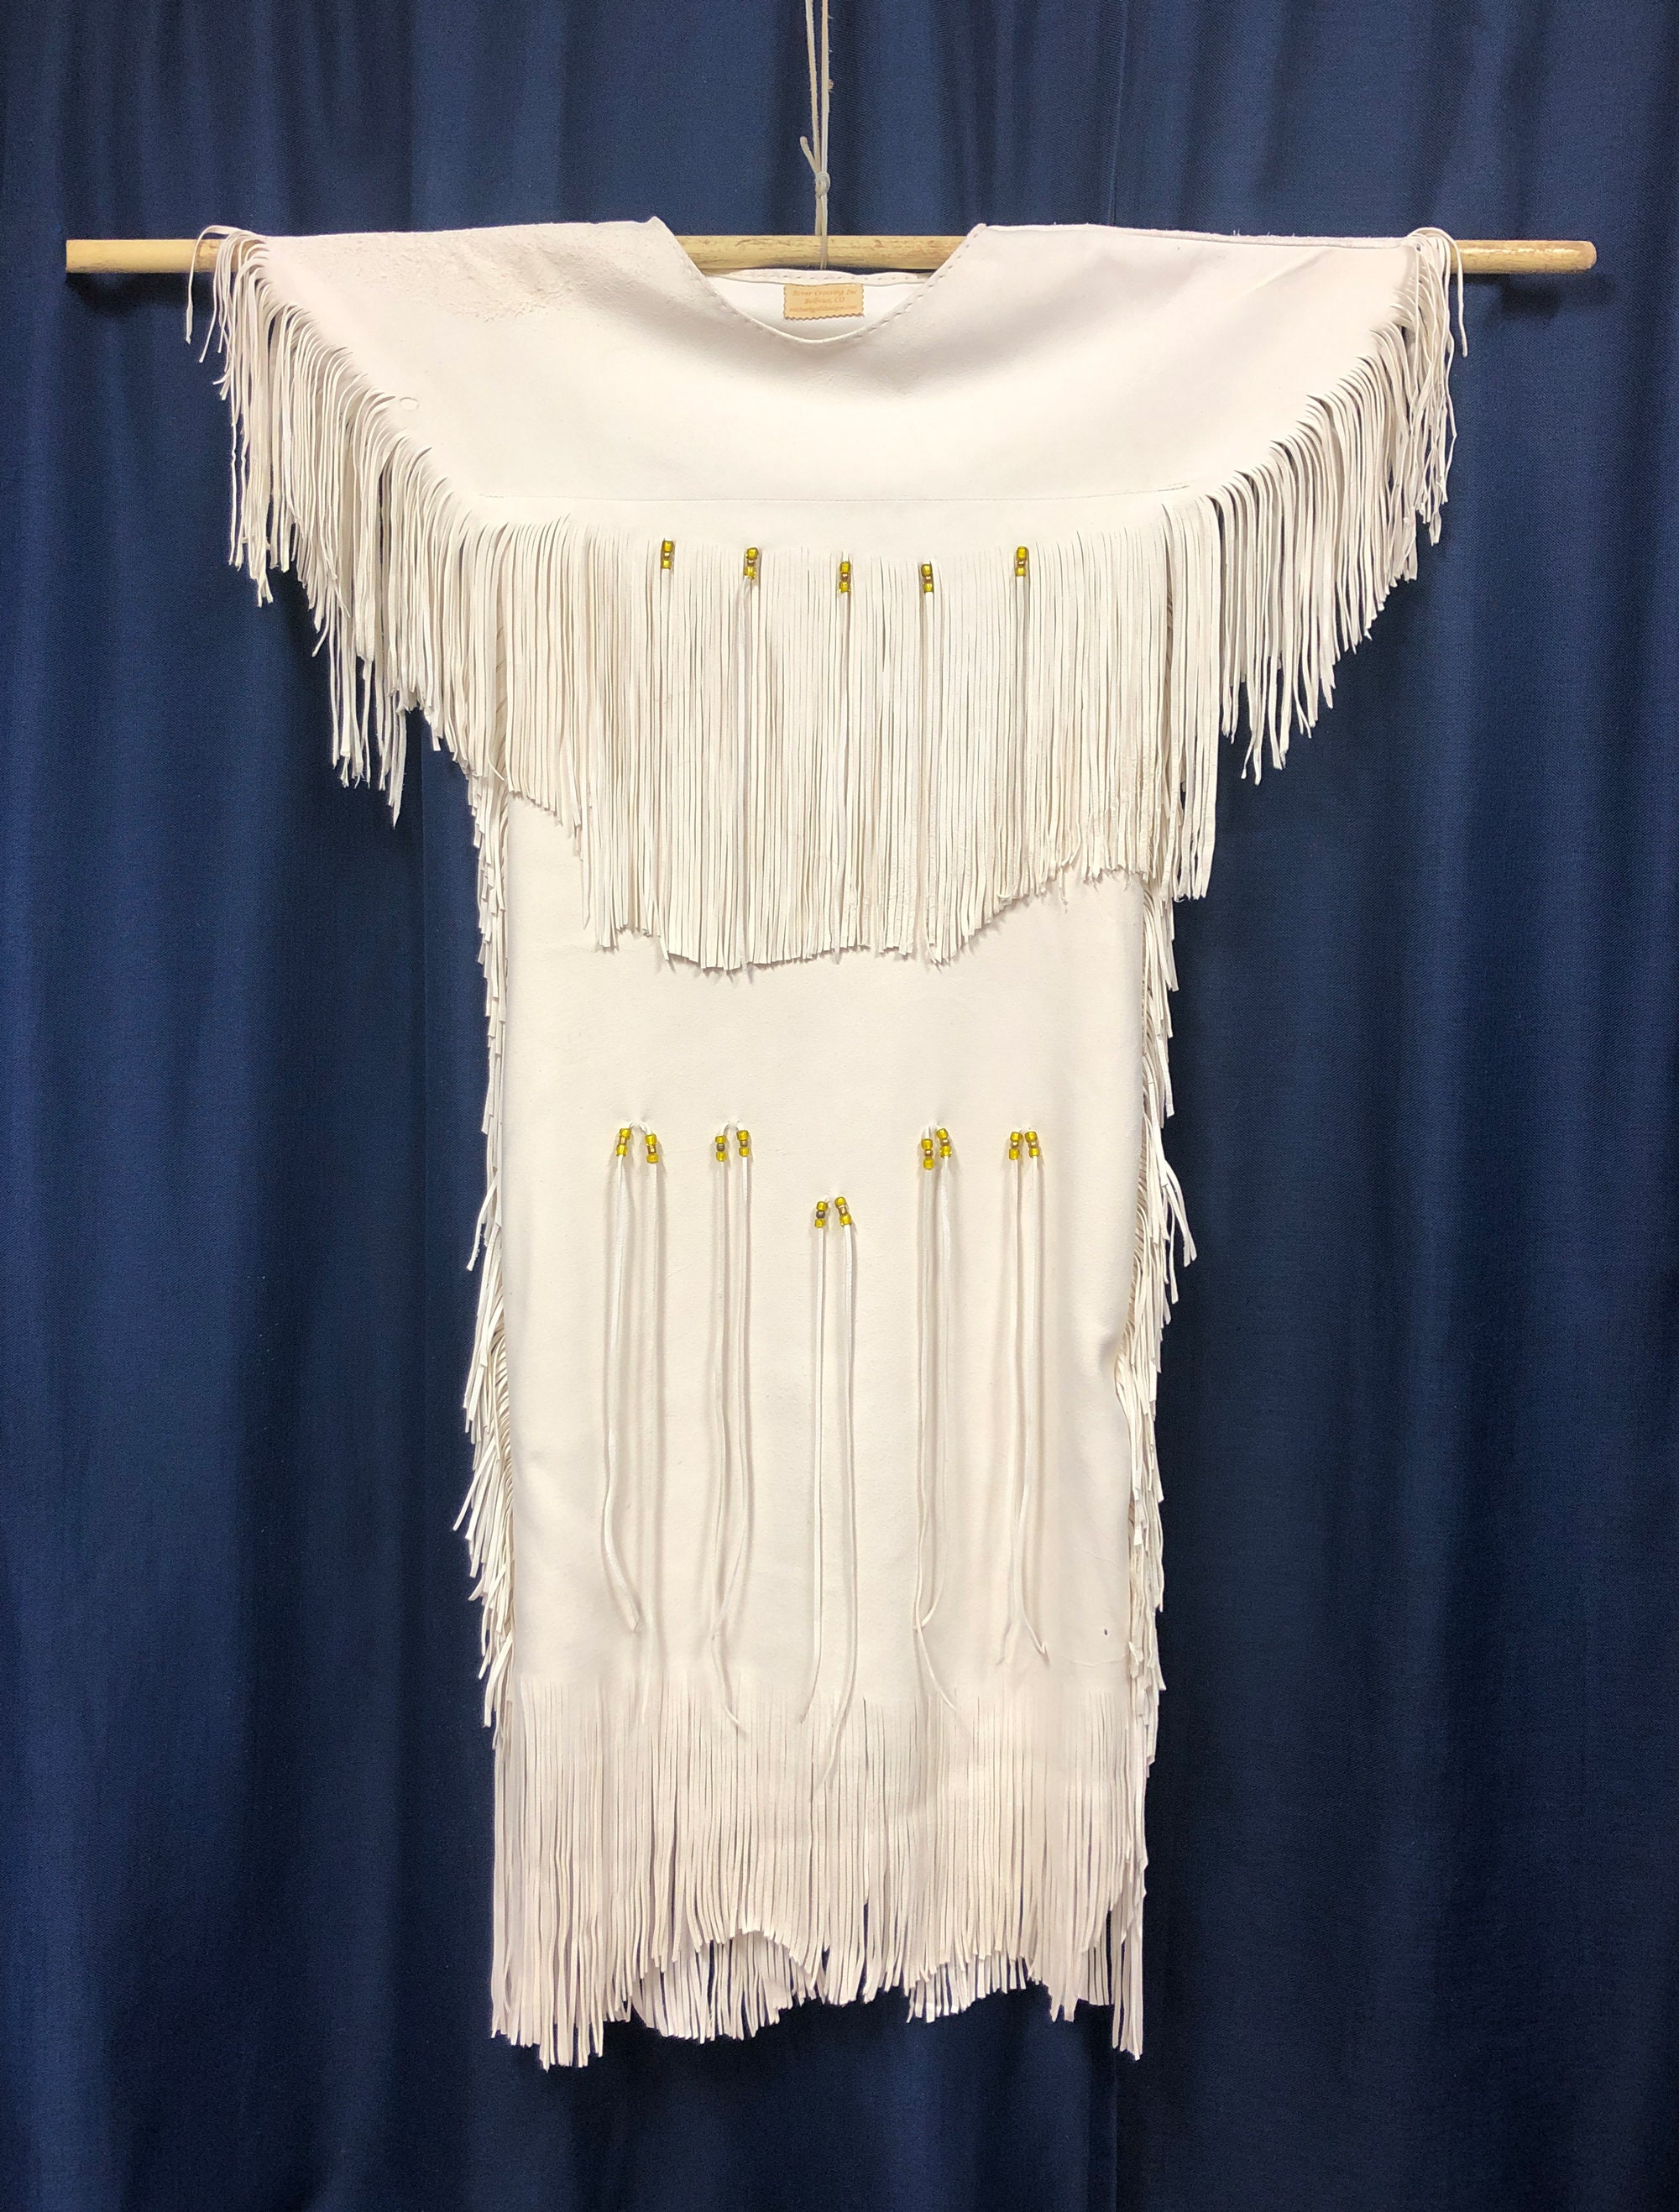 Buckskin-deerskin Native American Dress, German Braintanned Hide, Plains  Indian Three-skin Style, Handmade and Hand-painted, made to Order -   Israel